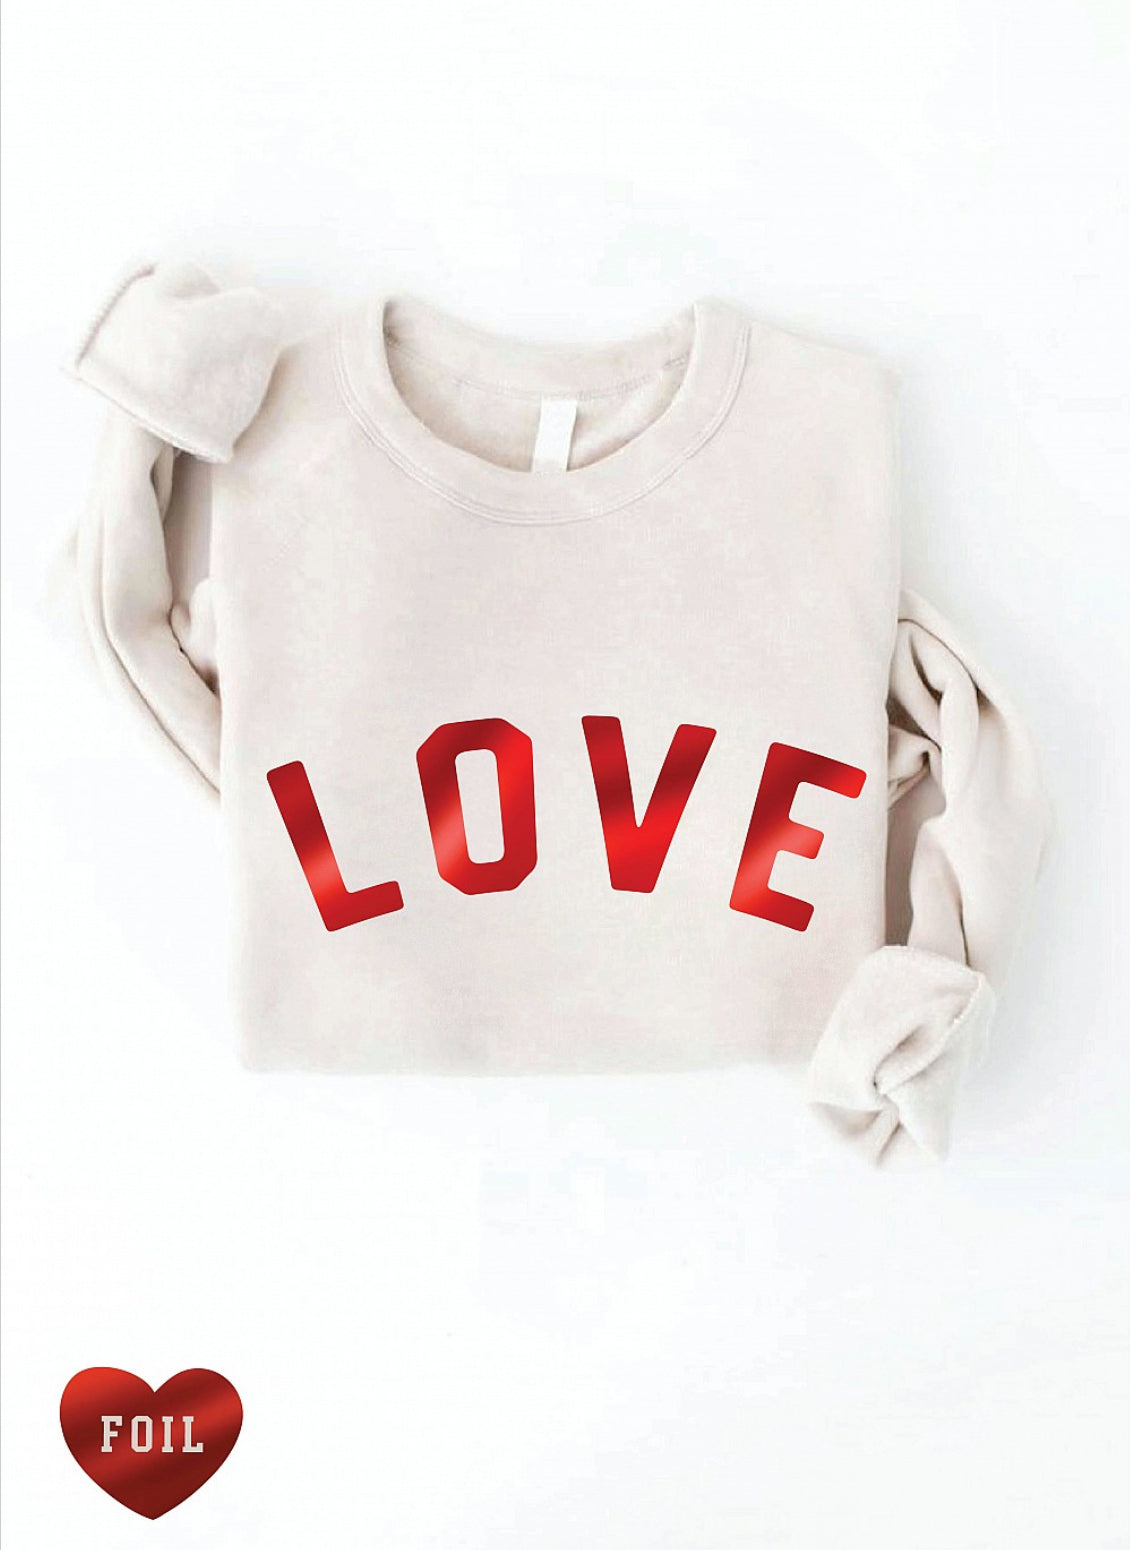 LOVE Foil Font Sponge Sweatshirt, Two Colors